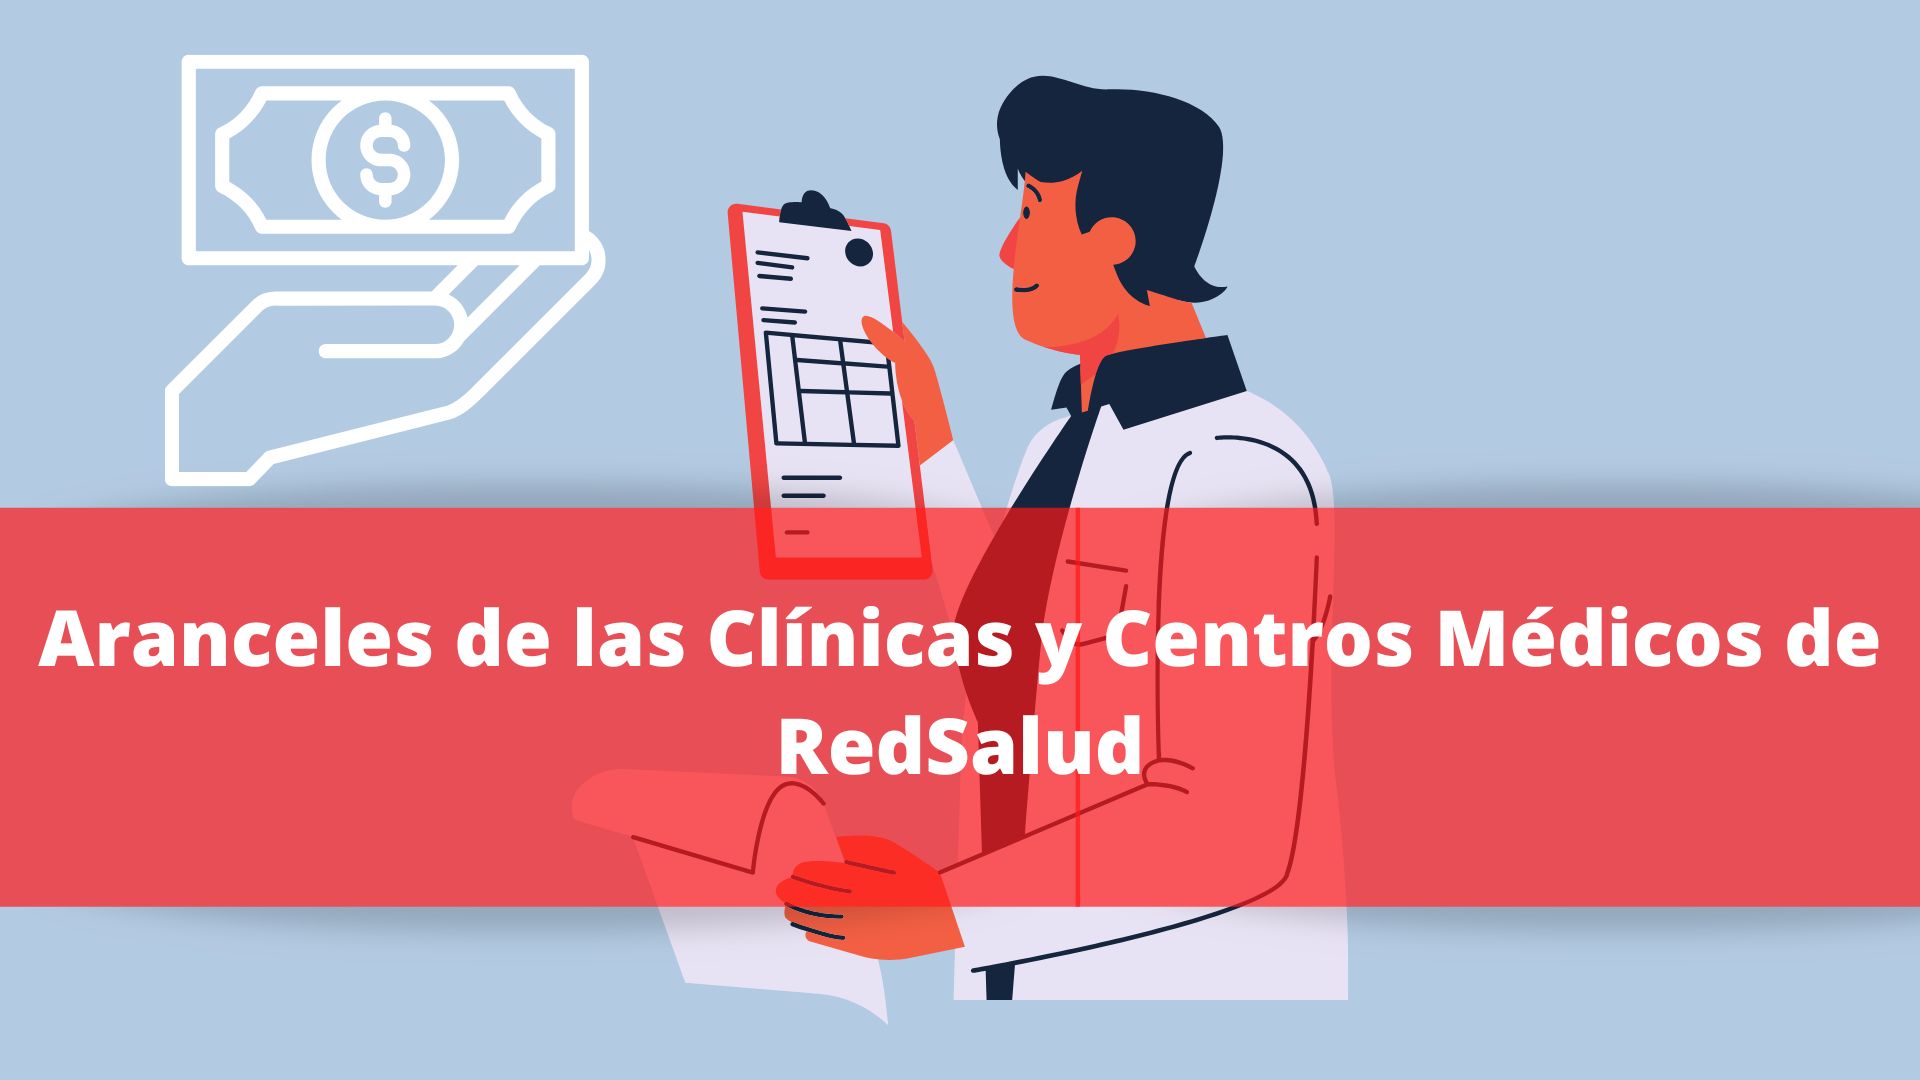 Aranceles de las Clínicas y Centros Médicos de RedSalud